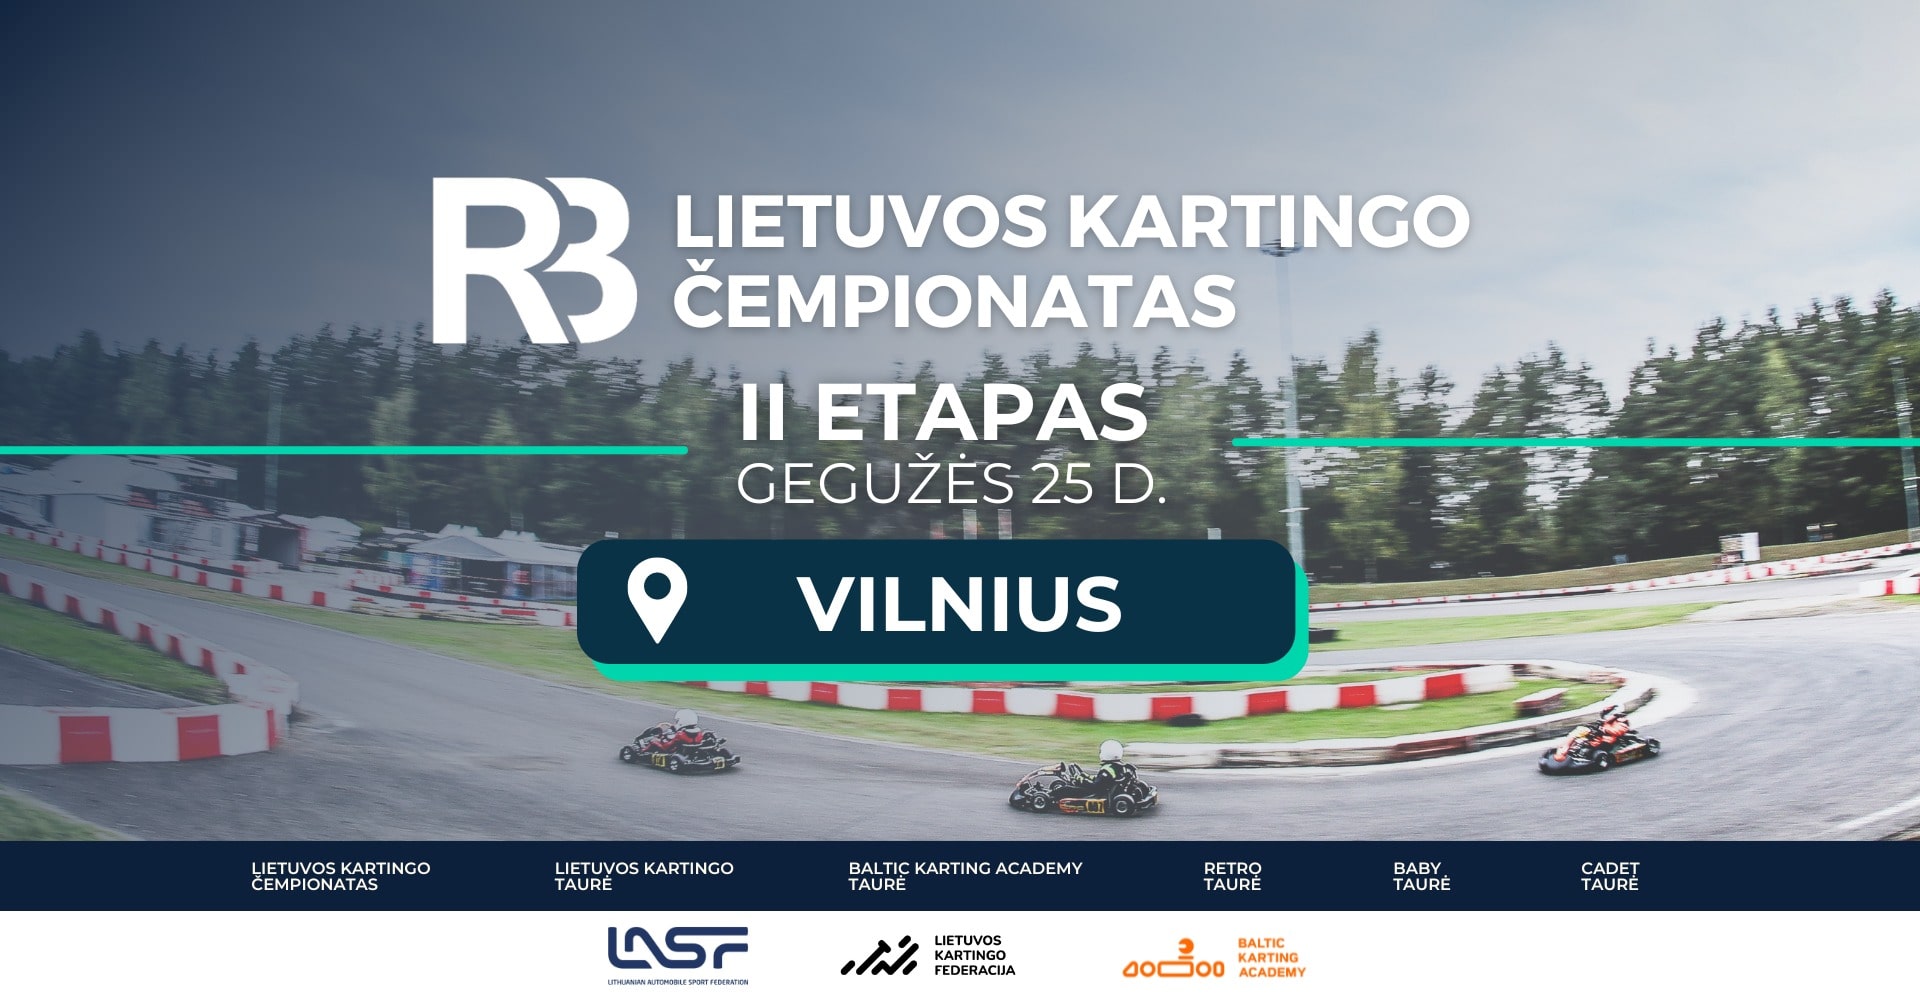 RB Lietuvos kartingo čempionatas | II etapas | Vilnius